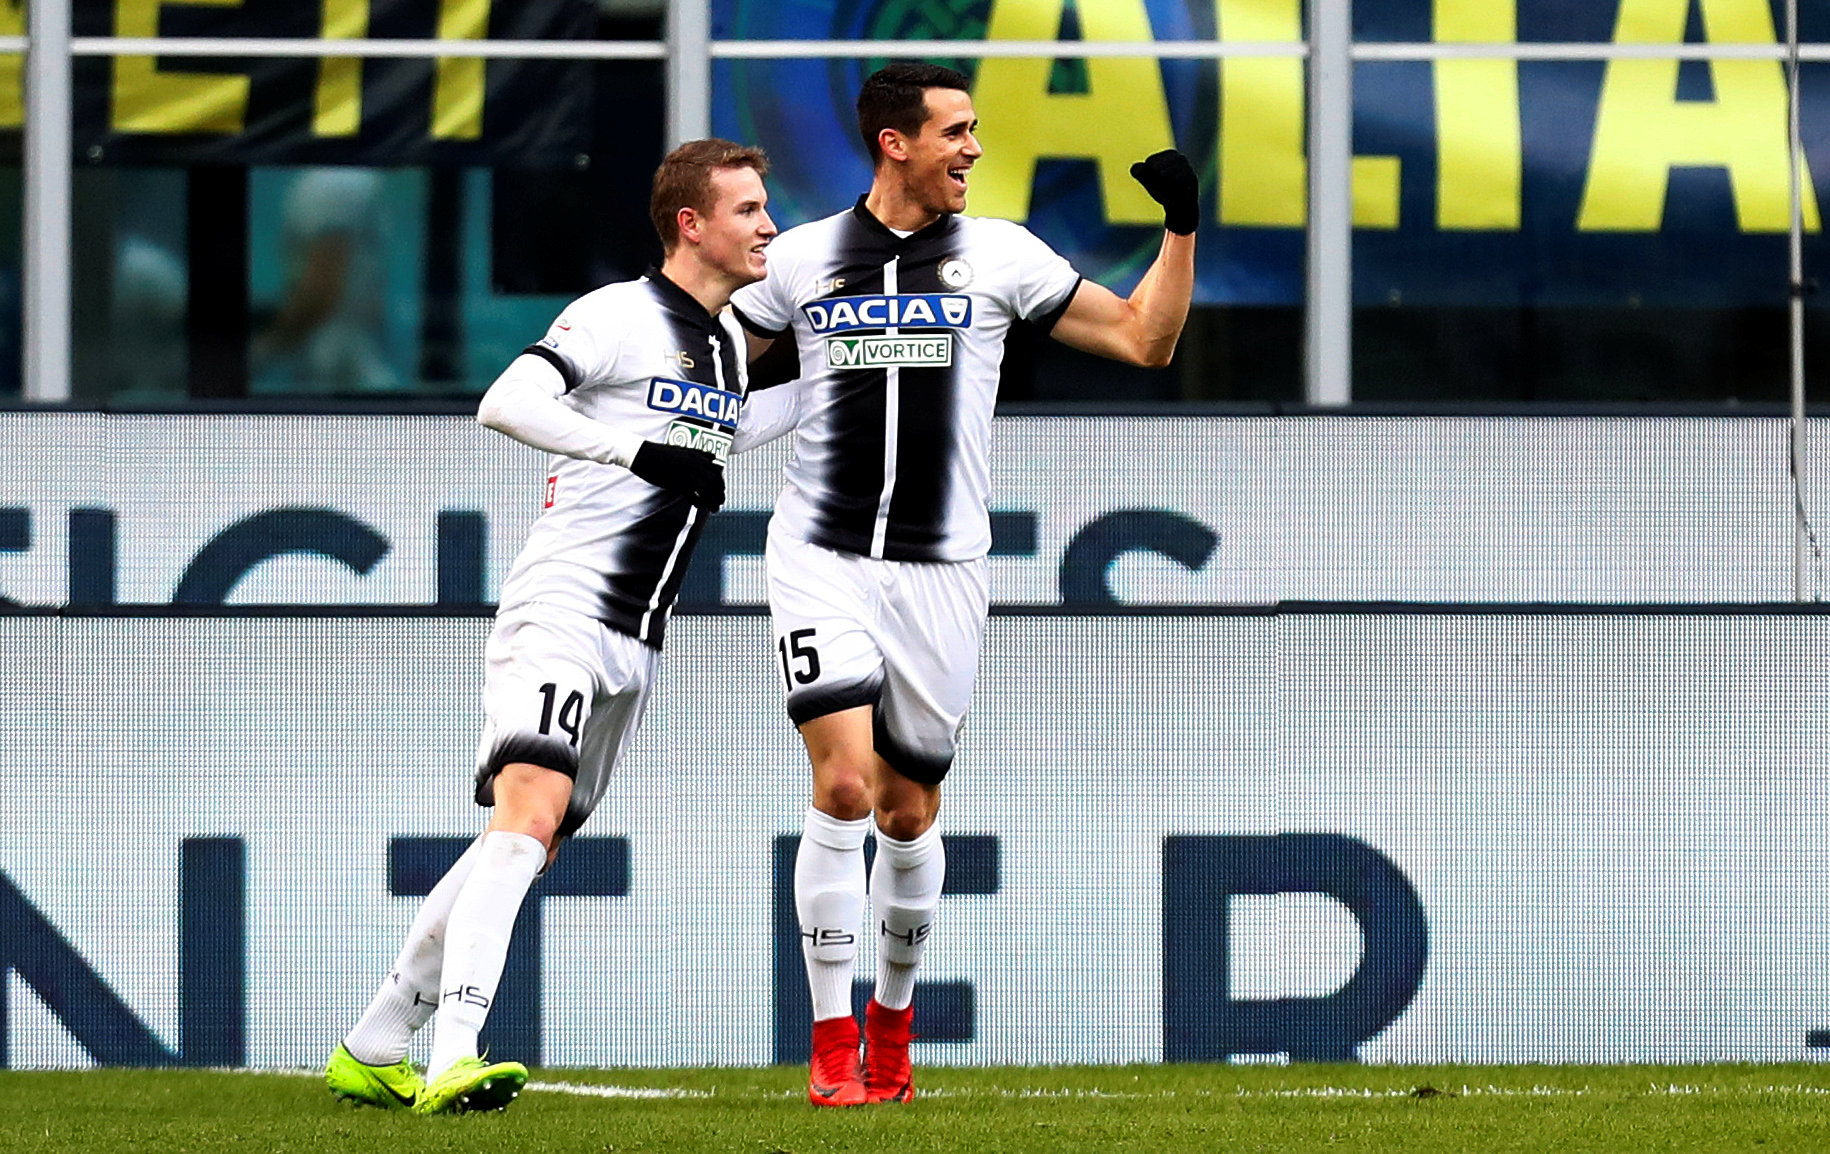 Niềm vui của các cầu thủ Udinese sau khi ghi bàn vào lưới Inter. Ảnh: REUTERS